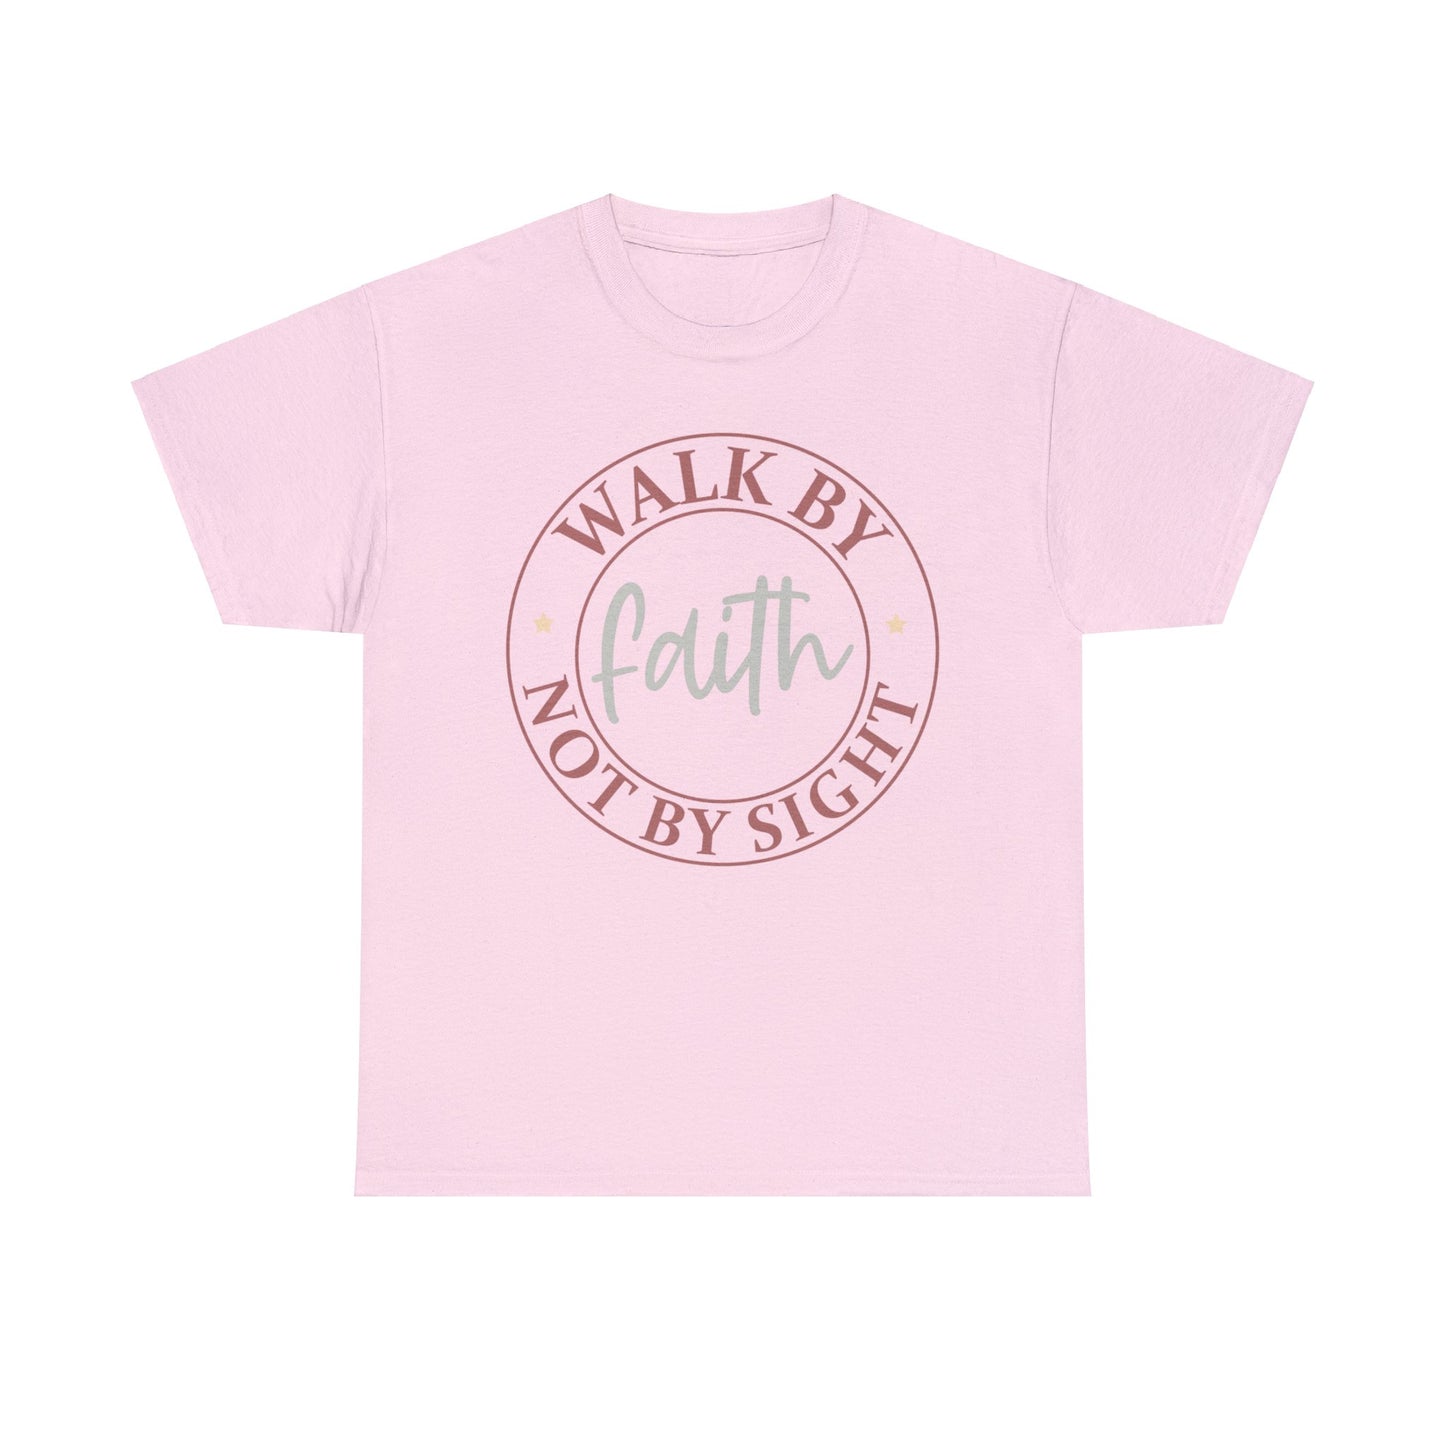 Walk By Faith Not Sight Shirt, Christian Shirt, Religious Shirt, Faith Tee (Faith-9)